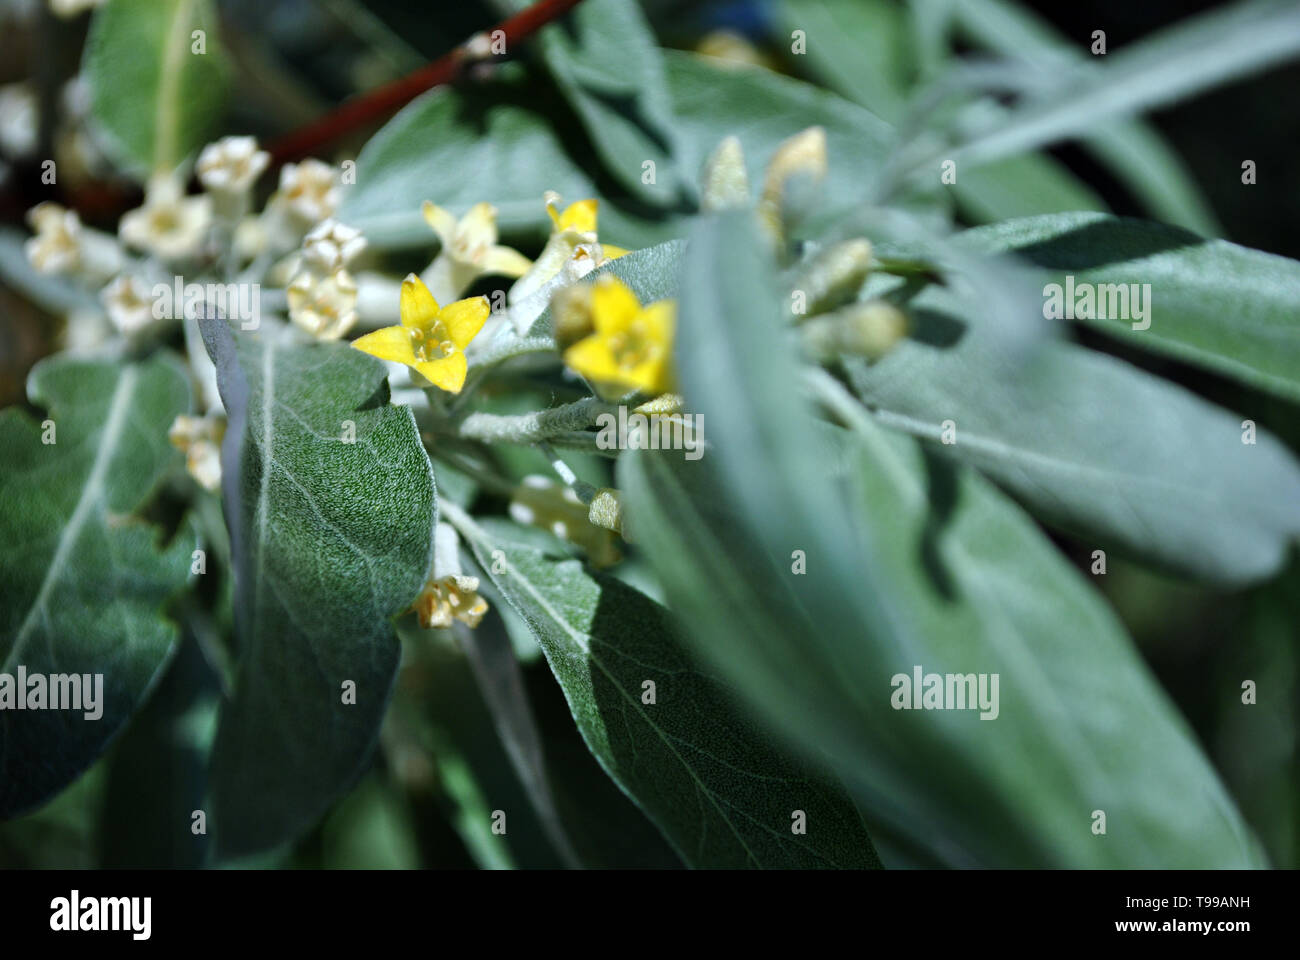 Elaeagnus angustifolia, comunemente chiamato Oliva Russo, argento berry, olivastro, persiano oliva o rami dell'ulivo selvatico con fiori di colore giallo e verde-blu Foto Stock